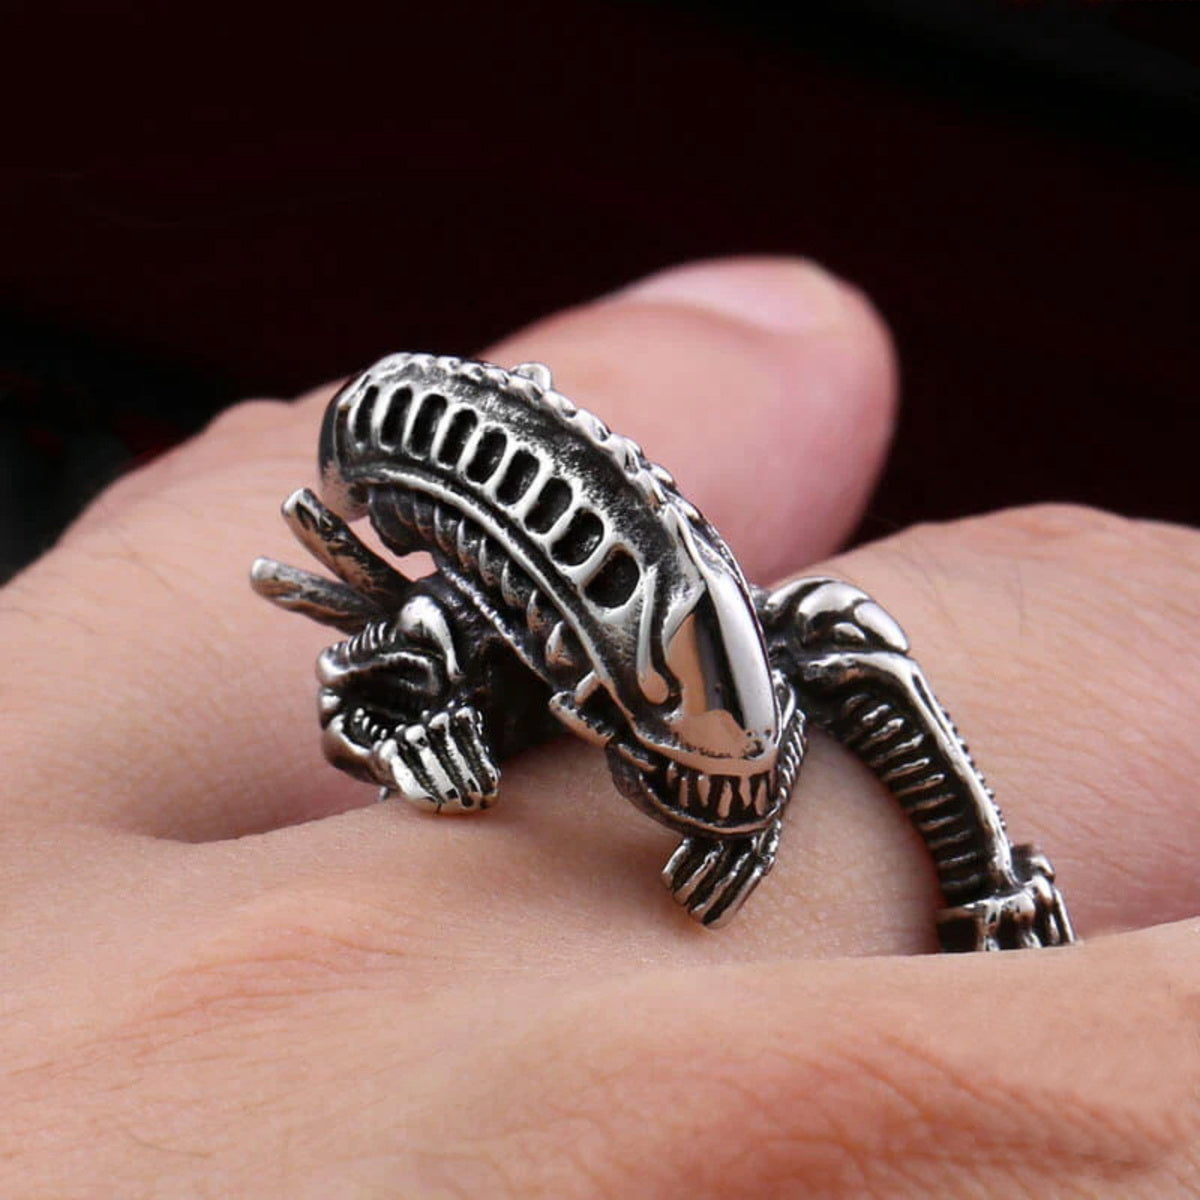 Alien Xenomorph stainless steel ring on finger